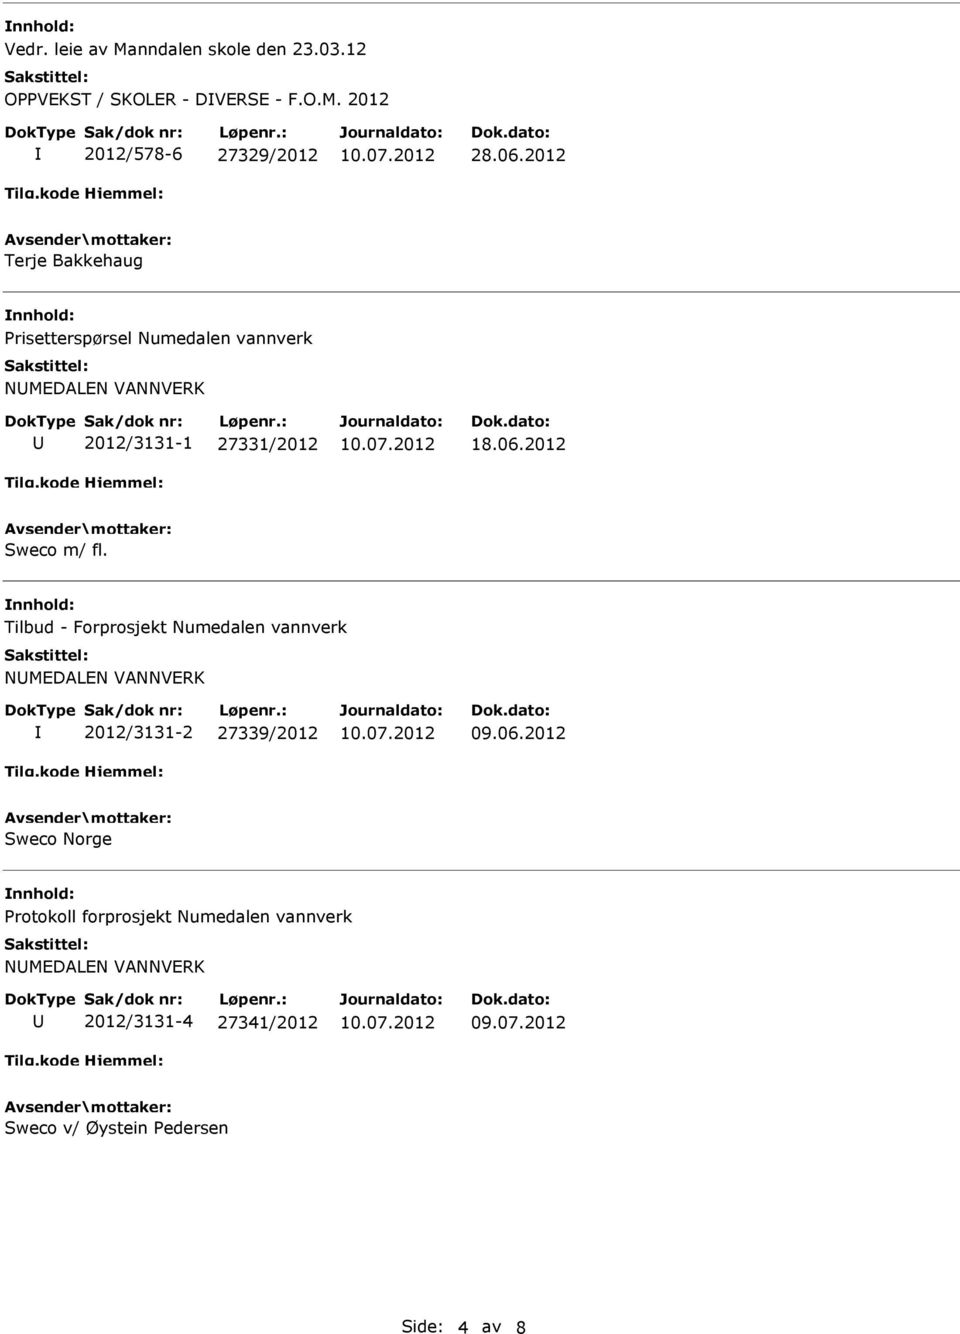 2012 Sweco m/ fl. nnhold: Tilbud - Forprosjekt Numedalen vannverk NMEDALEN VANNVERK 2012/3131-2 27339/2012 09.06.